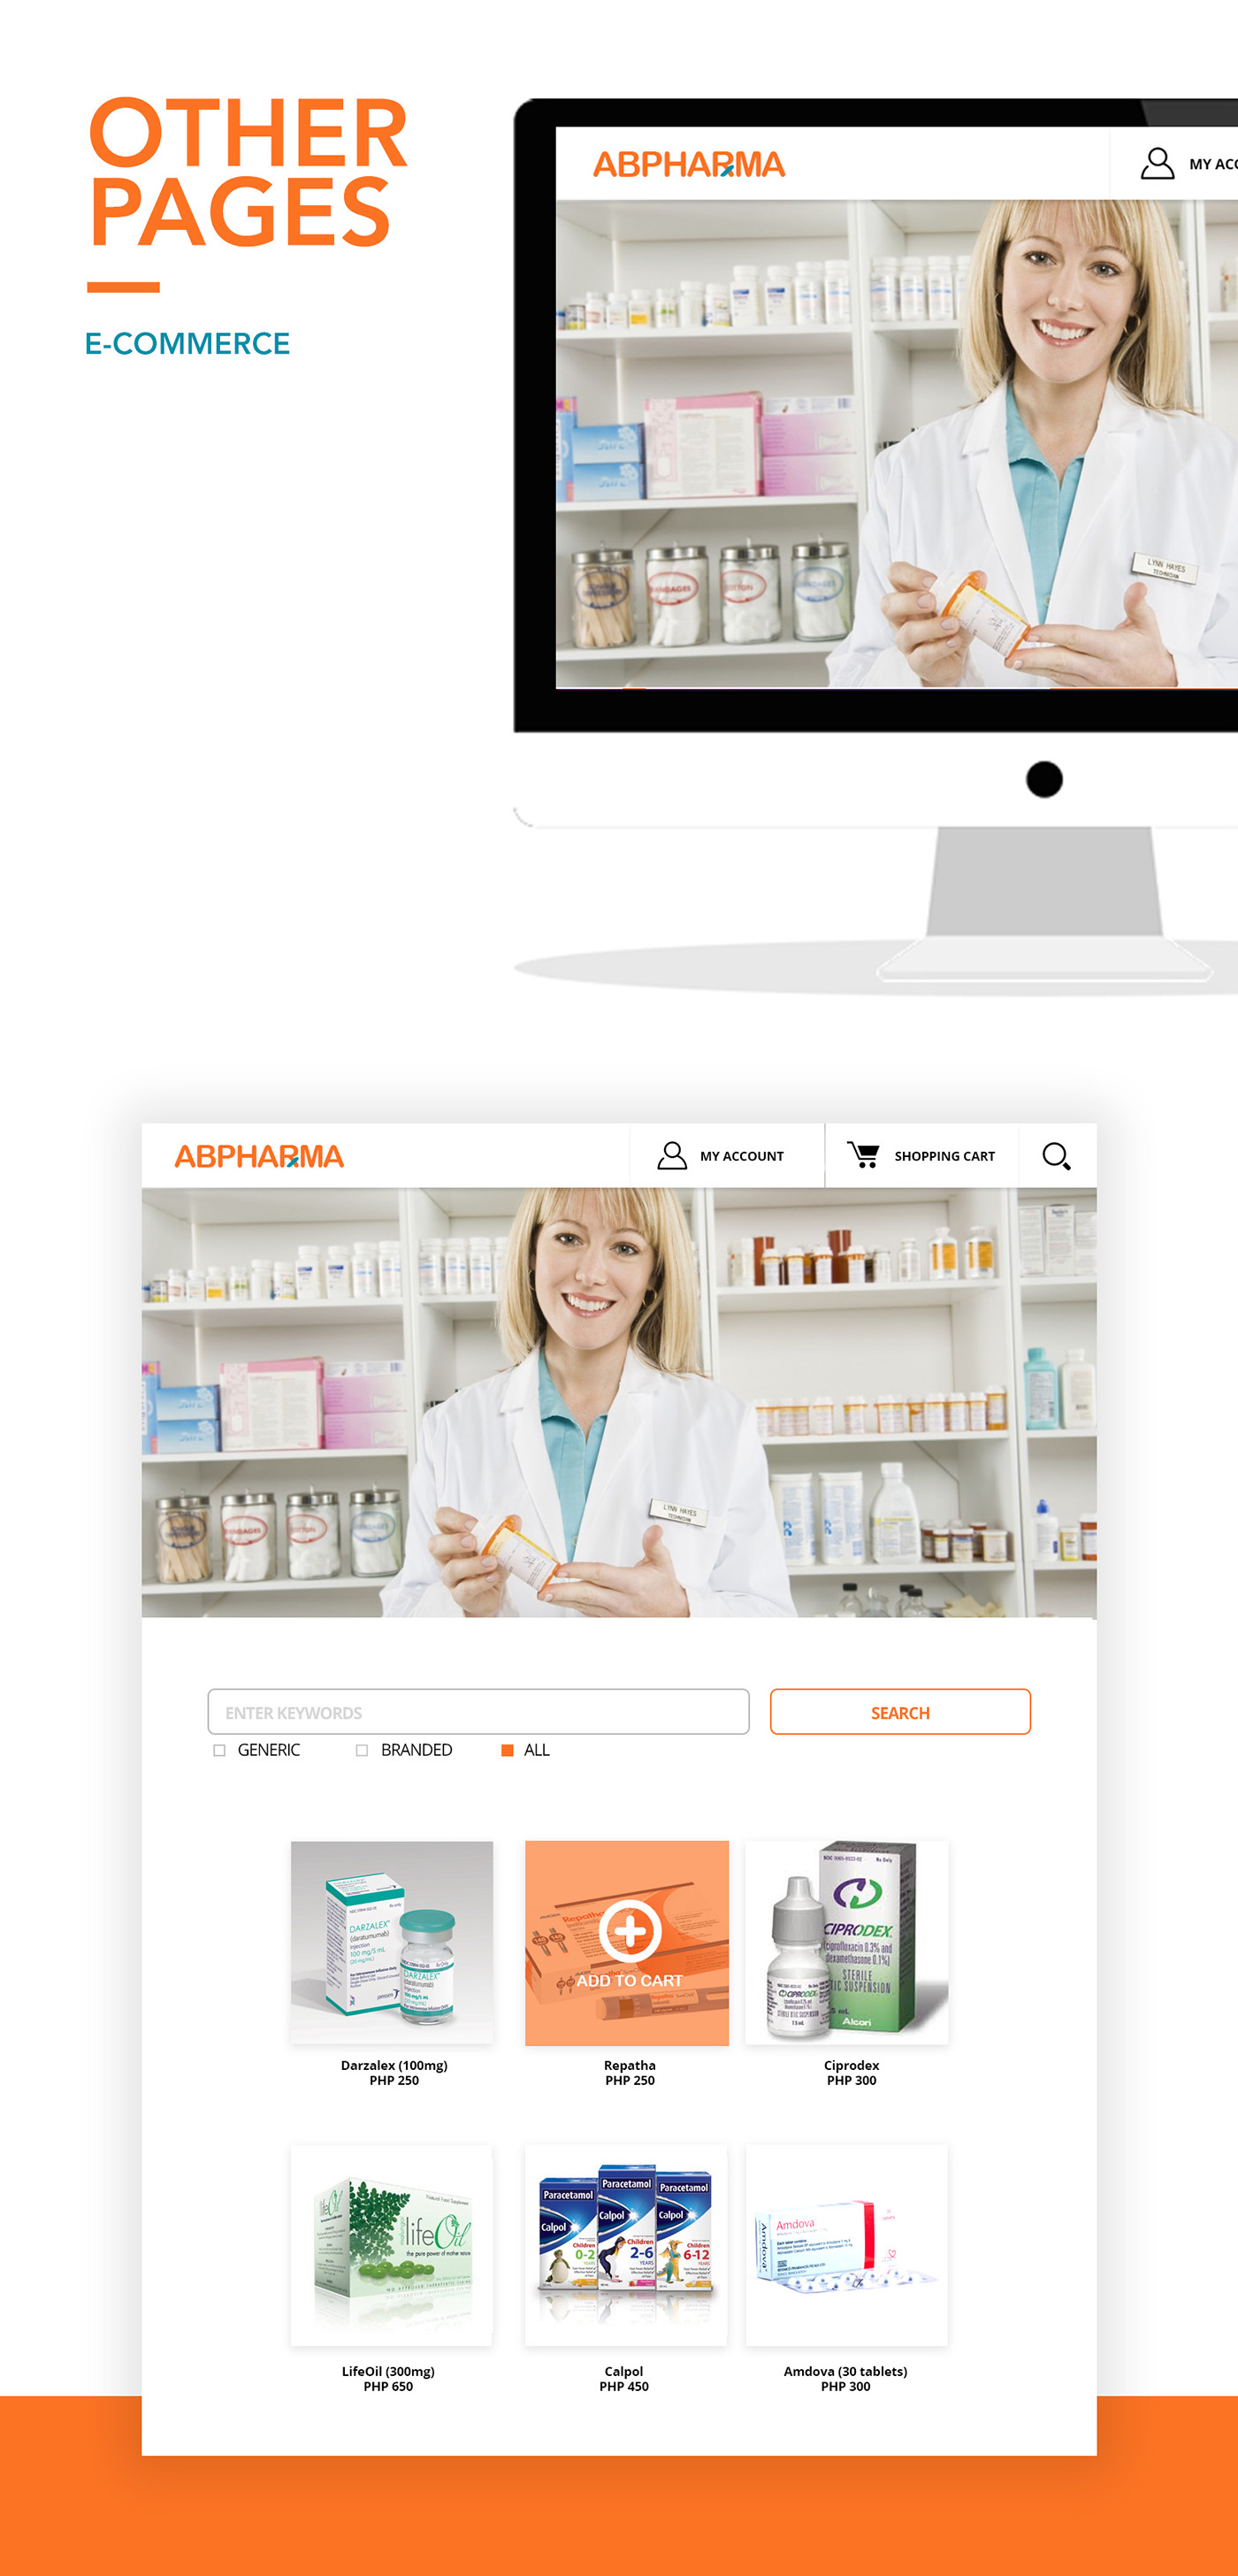 Healthway medical Website Design